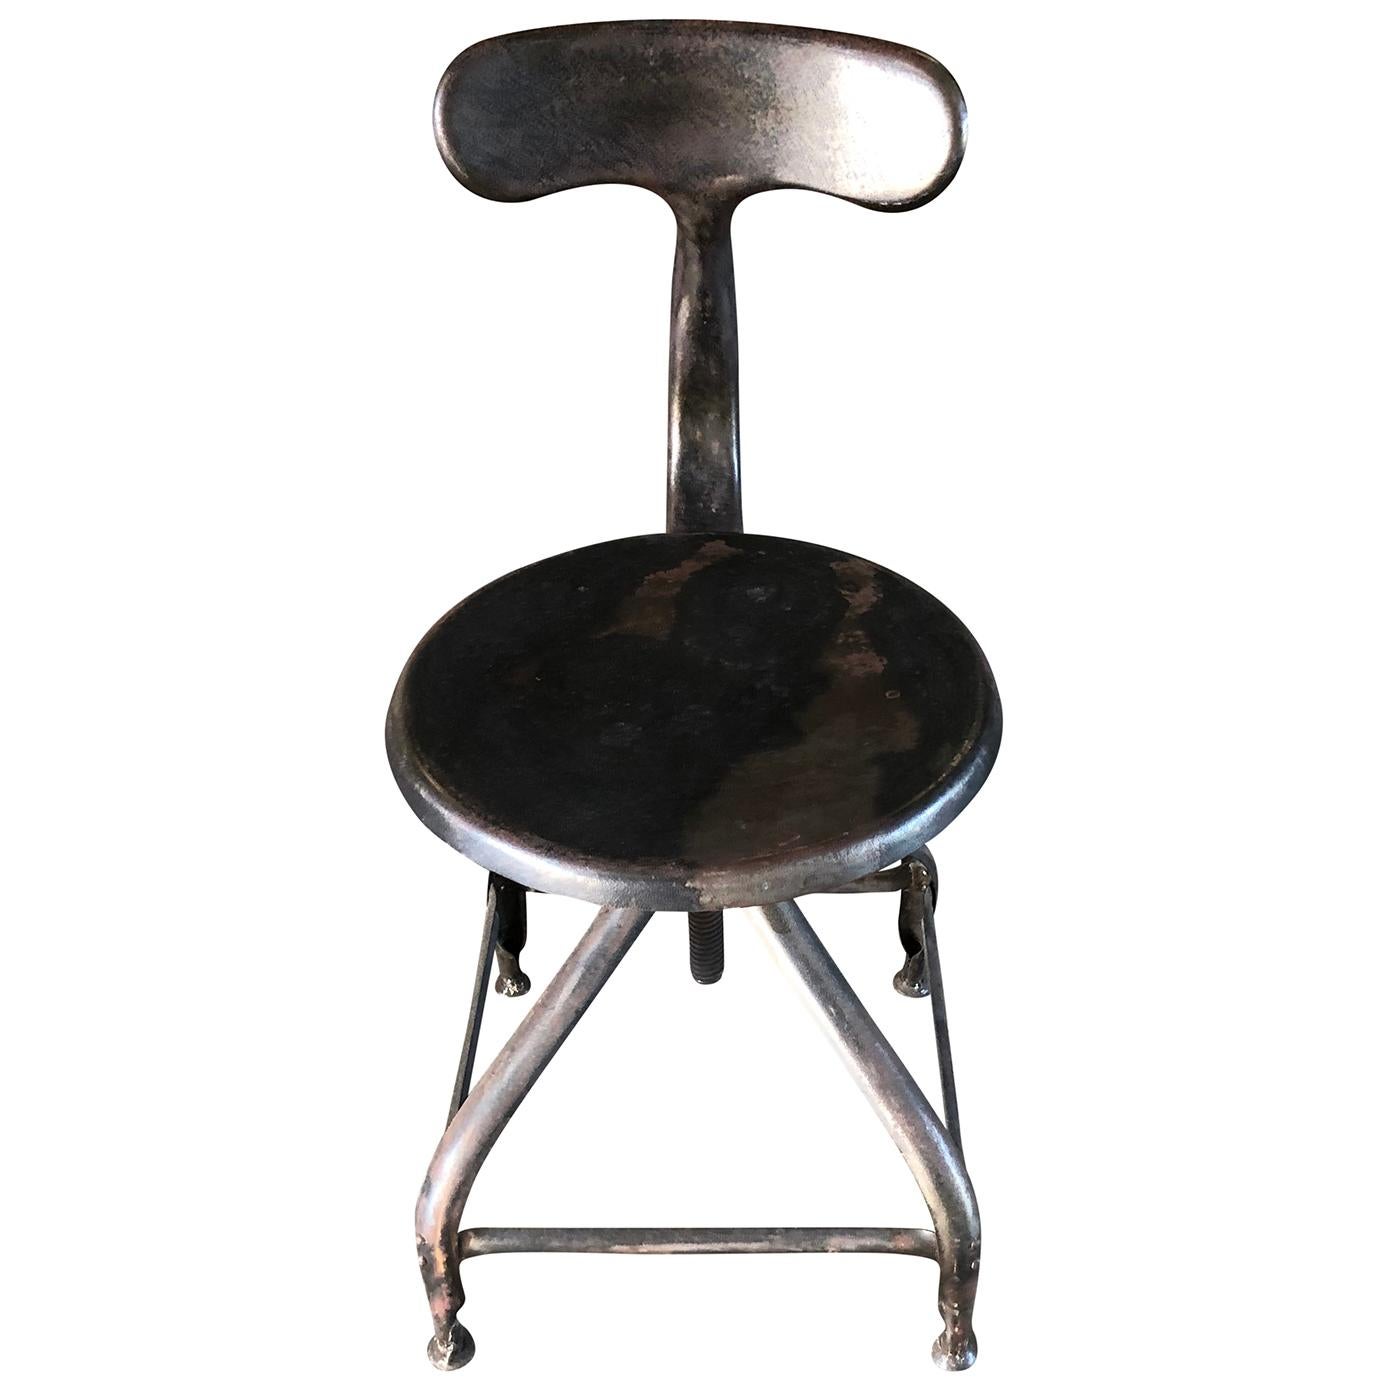 Une chaise d'atelier industrielle française vintage en métal brossé et ciré, la hauteur du siège est réglable. Conçu par Paul-Henry Nicolle et produit par NICOLLE, en bon état. Usure conforme à l'âge et à l'usage, vers 1930-1940, Paris, France.